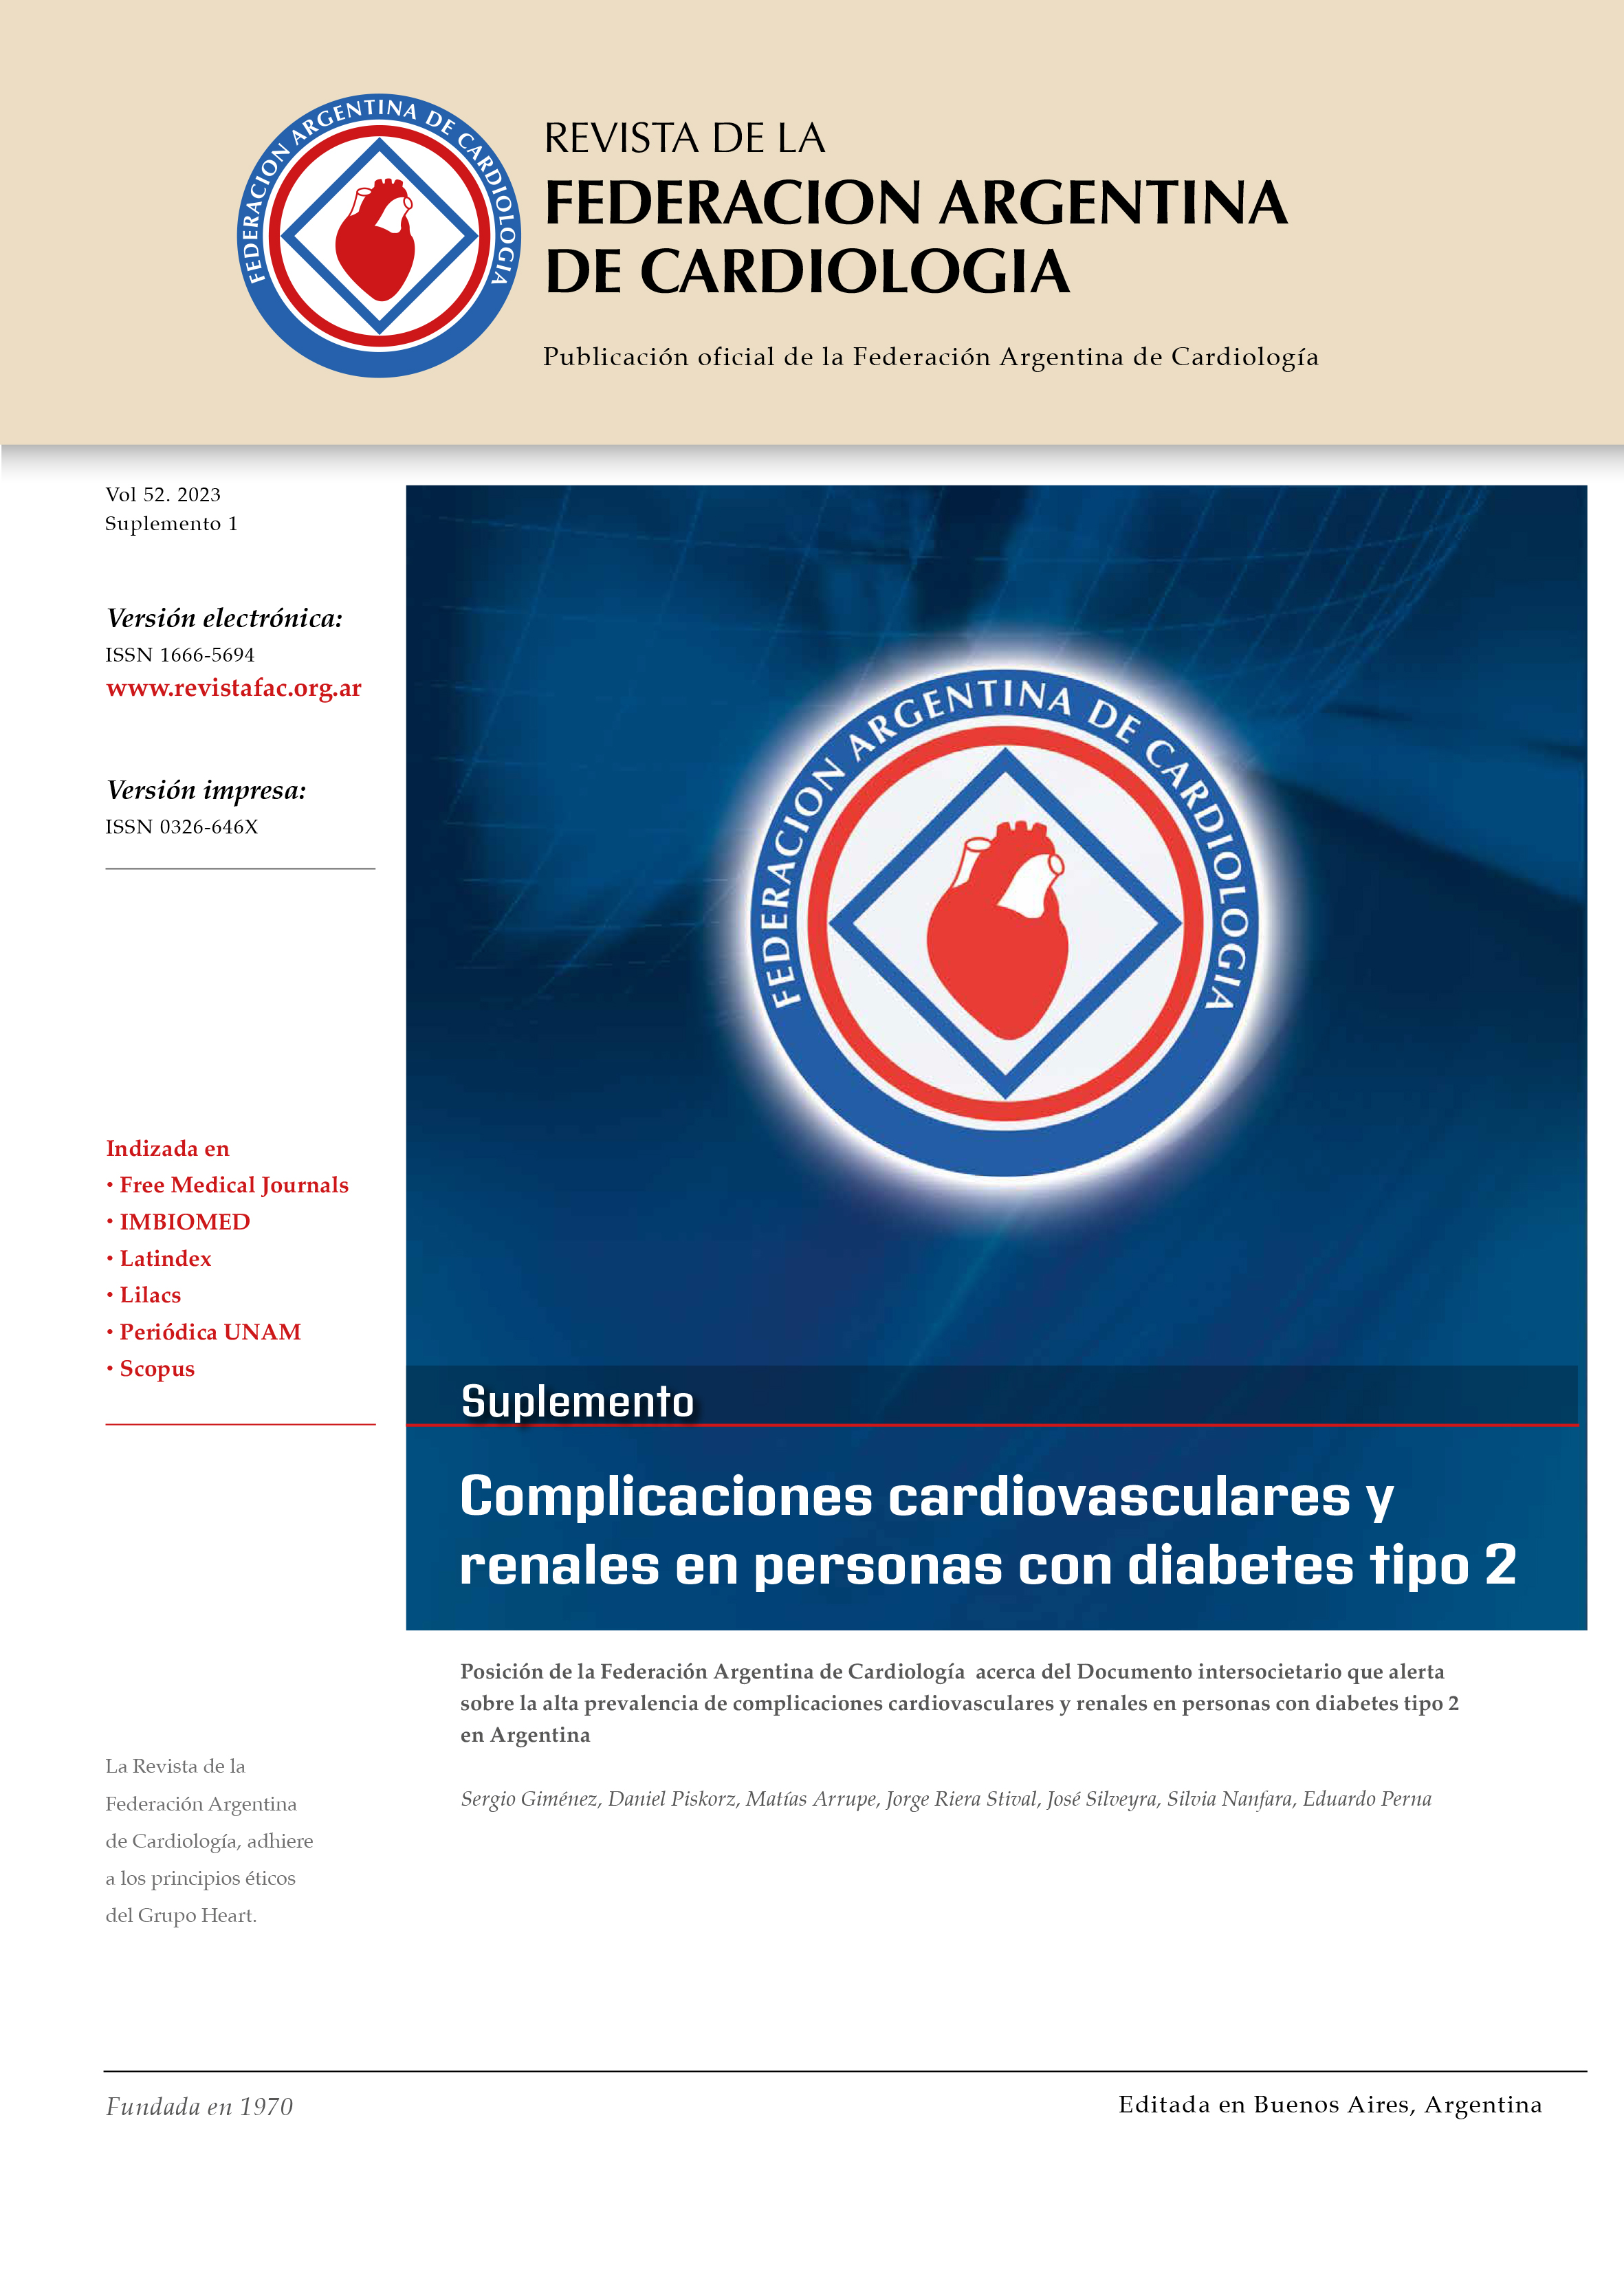 					Ver Vol. 52 (2023): Suplemento: Complicaciones cardiovasculares y renales en personas con diabetes tipo 2 en Argentina
				